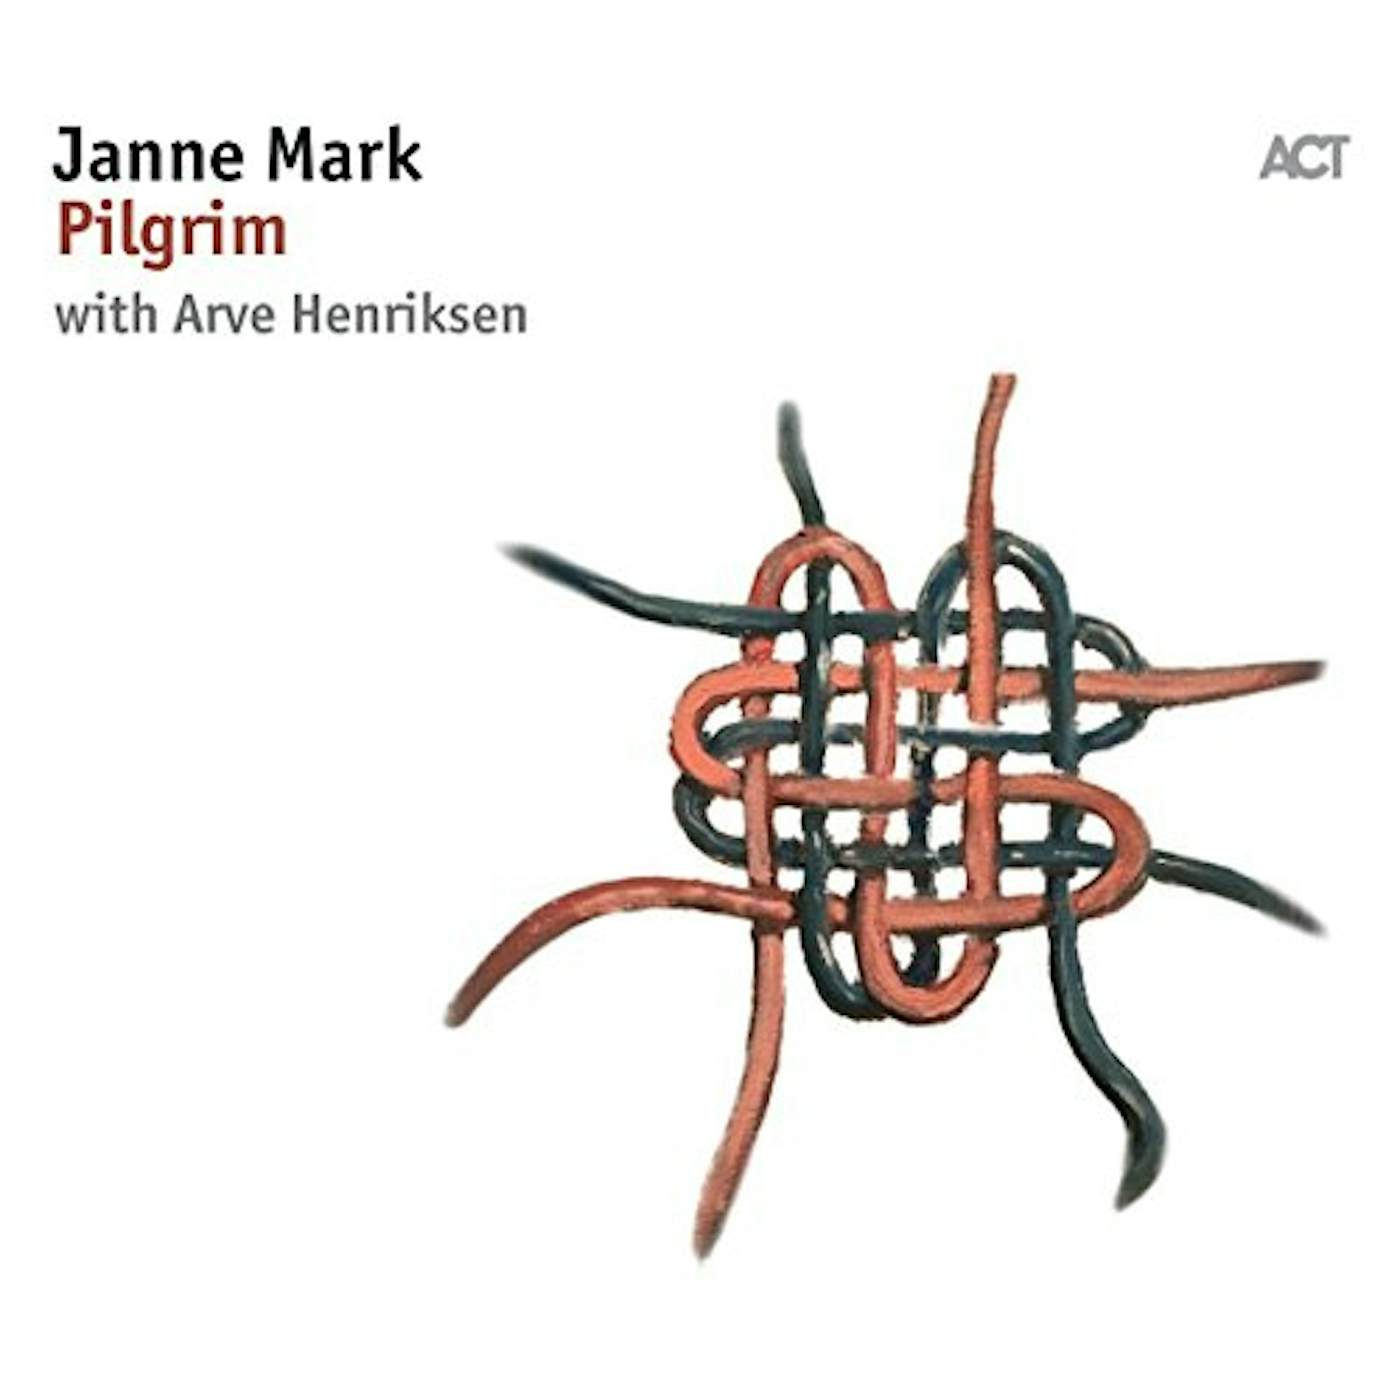 Janne Mark PILGRIM CD